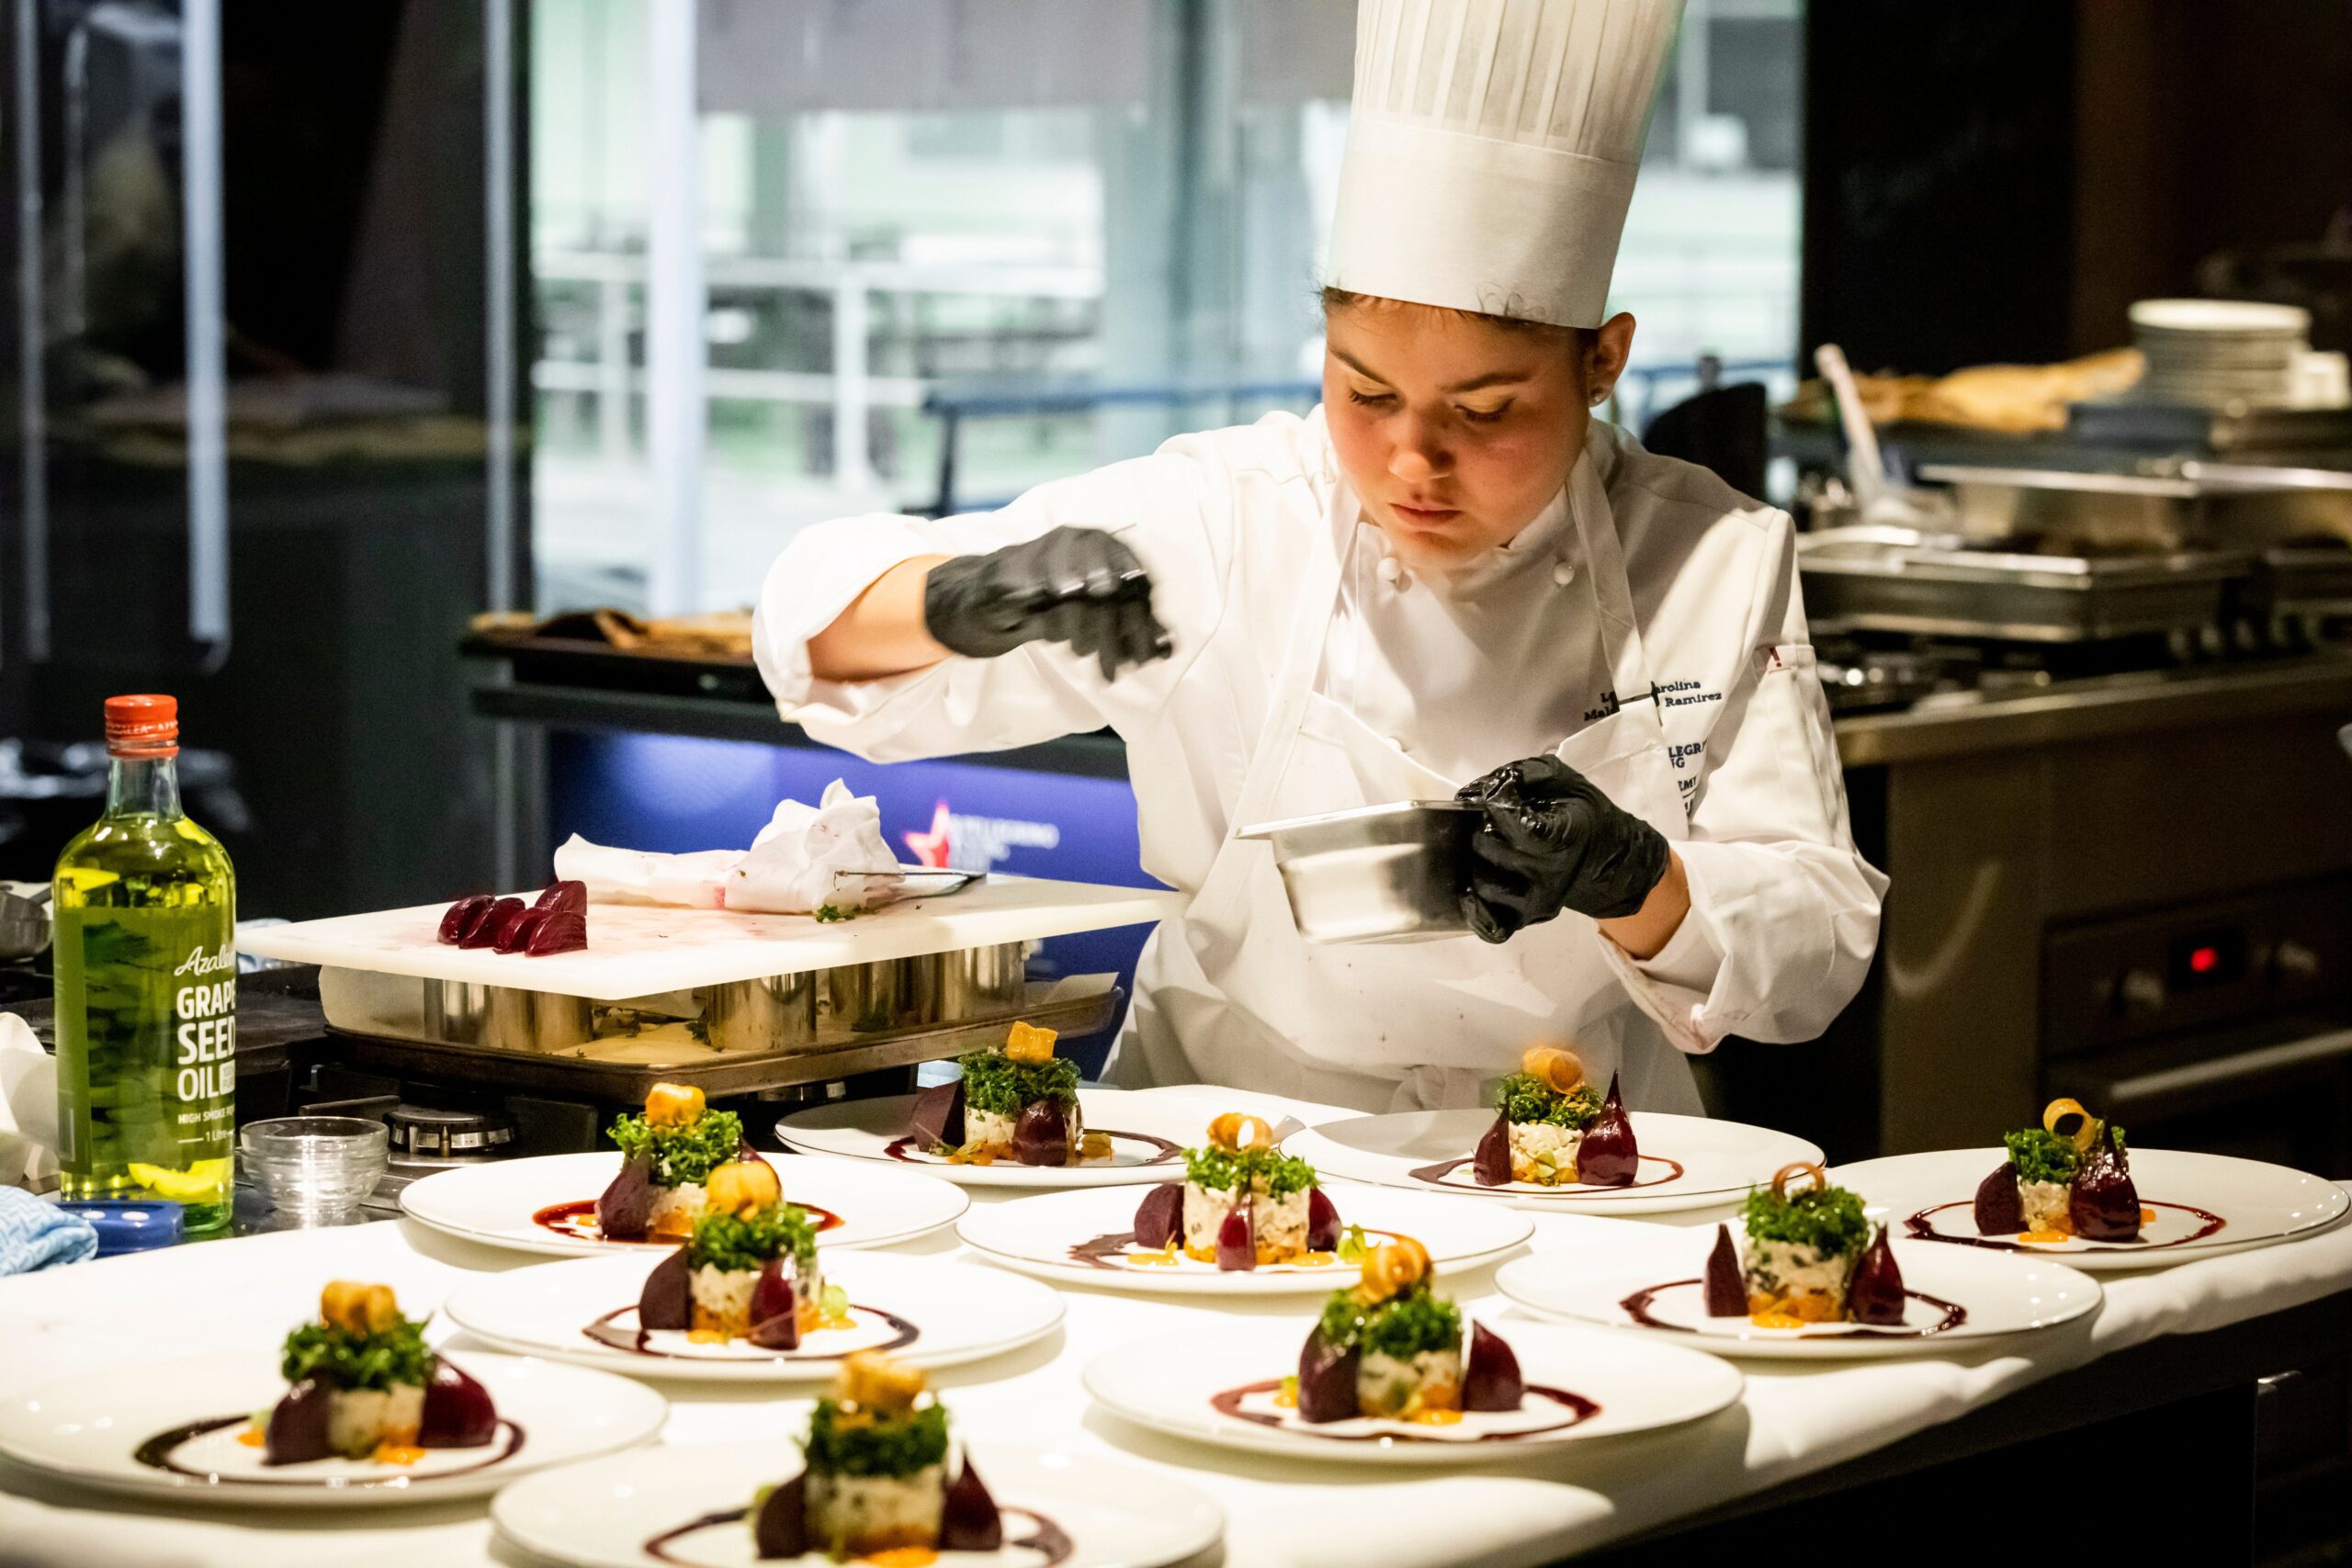 Chef ticos menores de 30 años podrán participar en la sexta edición del S. Pellegrino Young Chef Academy